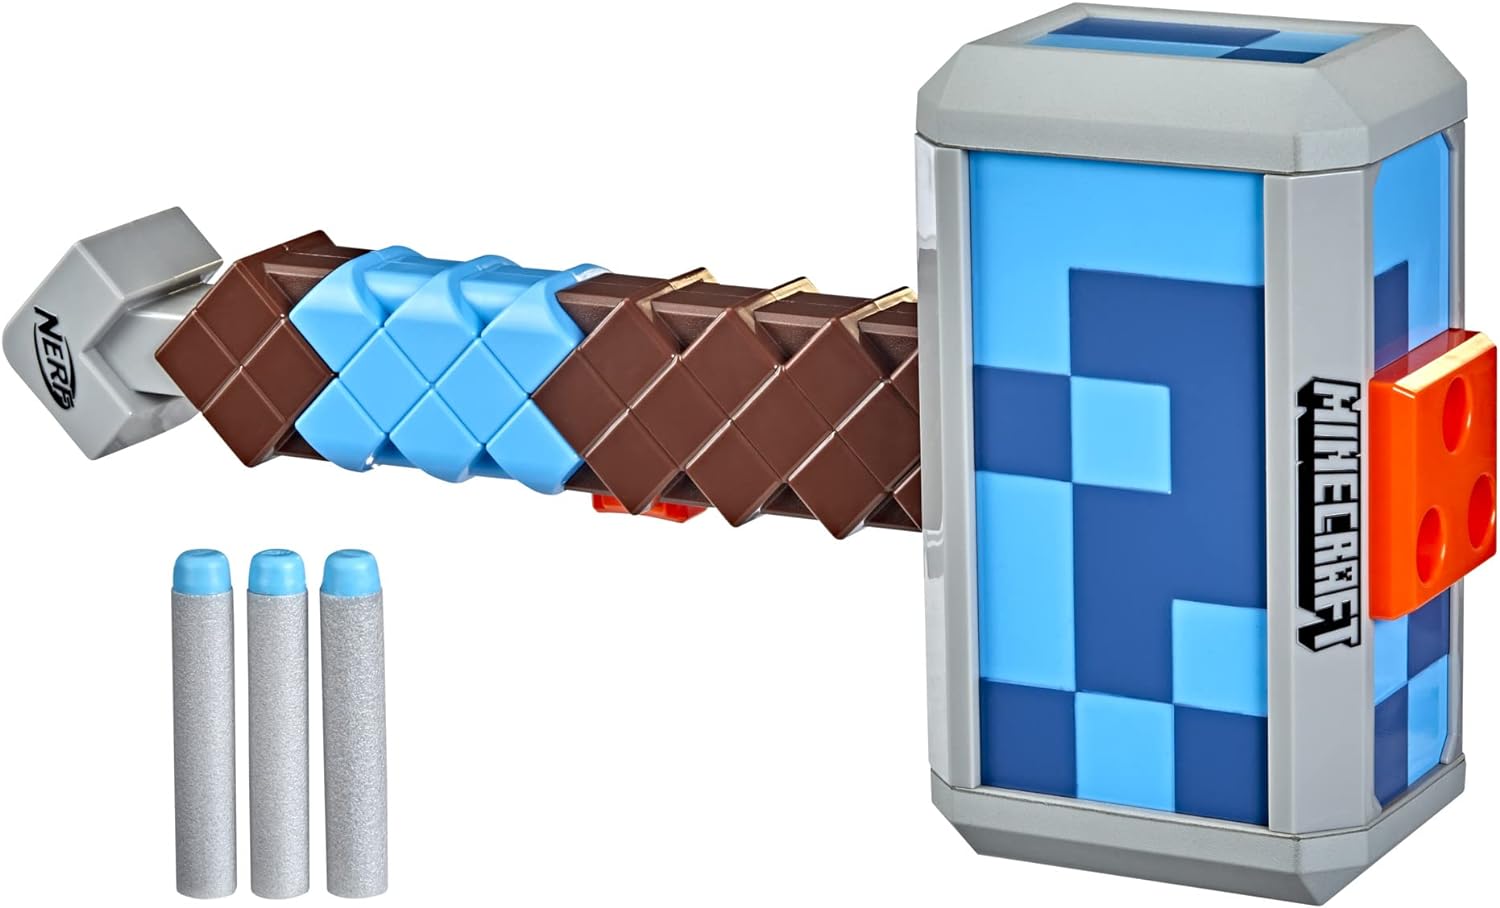 NERF Minecraft Stormlander Dart-Blasting Hammer, Fires 3 Darts, Includes 3 Official Elite Darts, Pull-Back Priming Handle